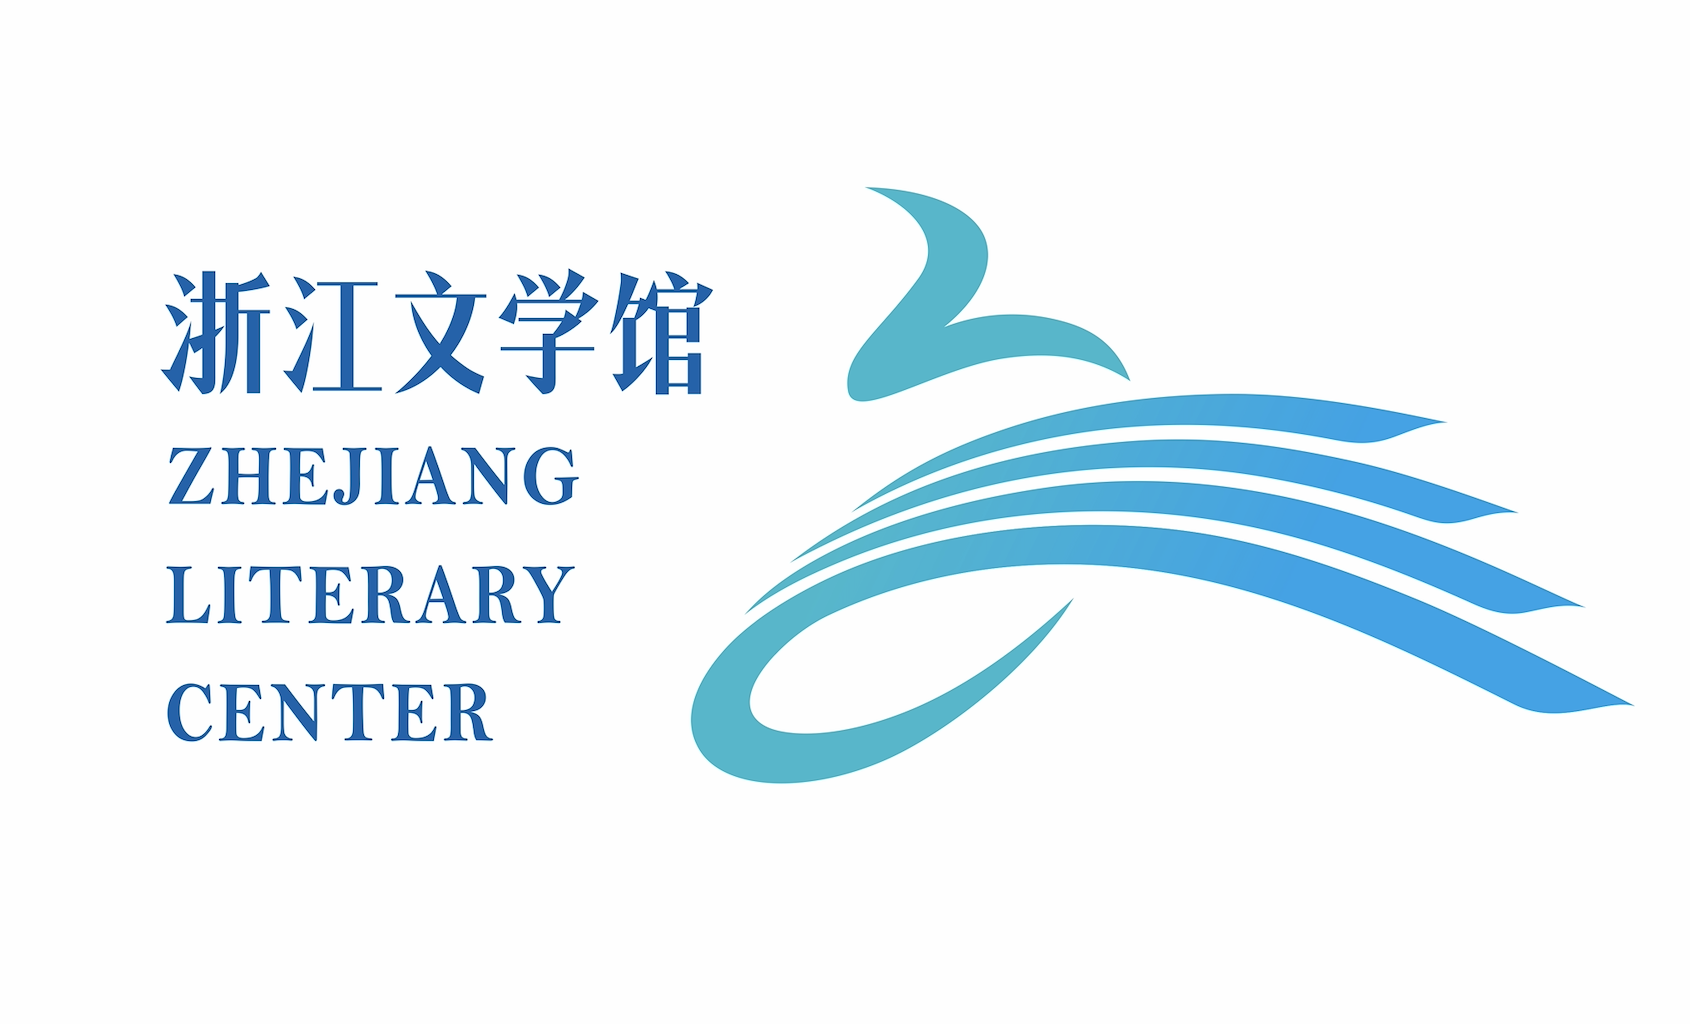 150件作品同网竞技,浙江文学馆logo征集进入评审阶段